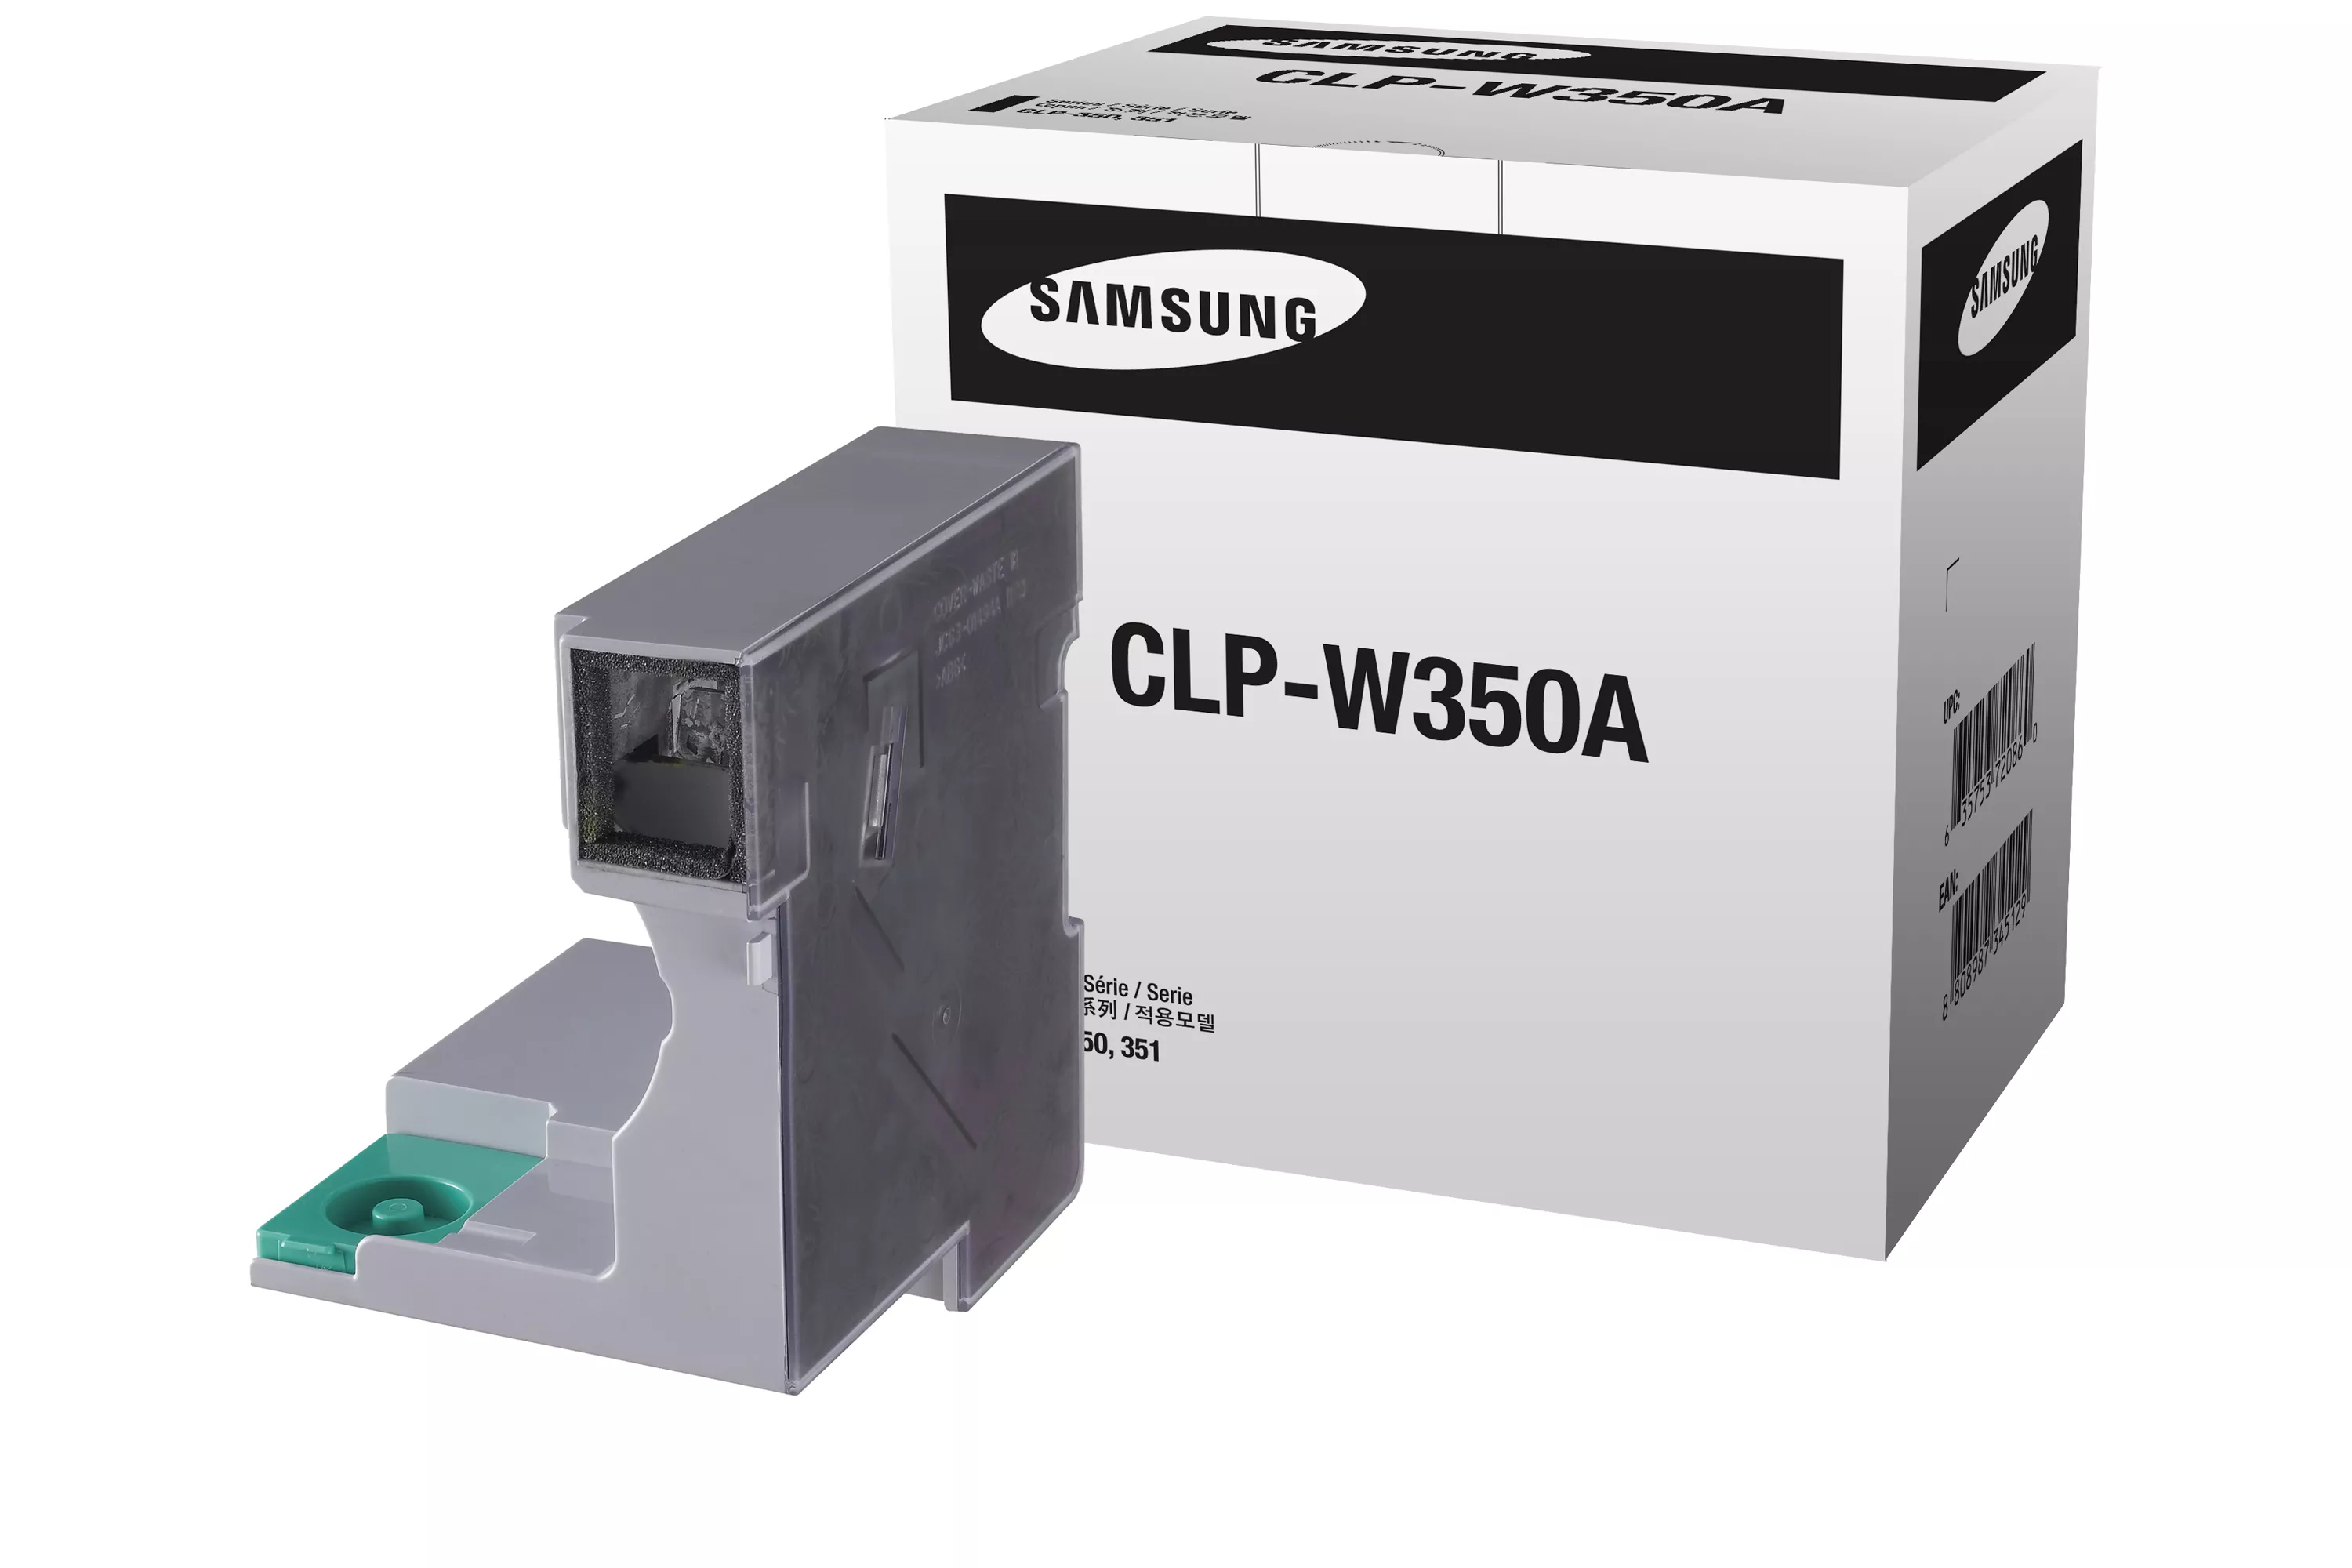 Vente SAMSUNG CLP-W350A conteneur déchets toner capacité Samsung au meilleur prix - visuel 2